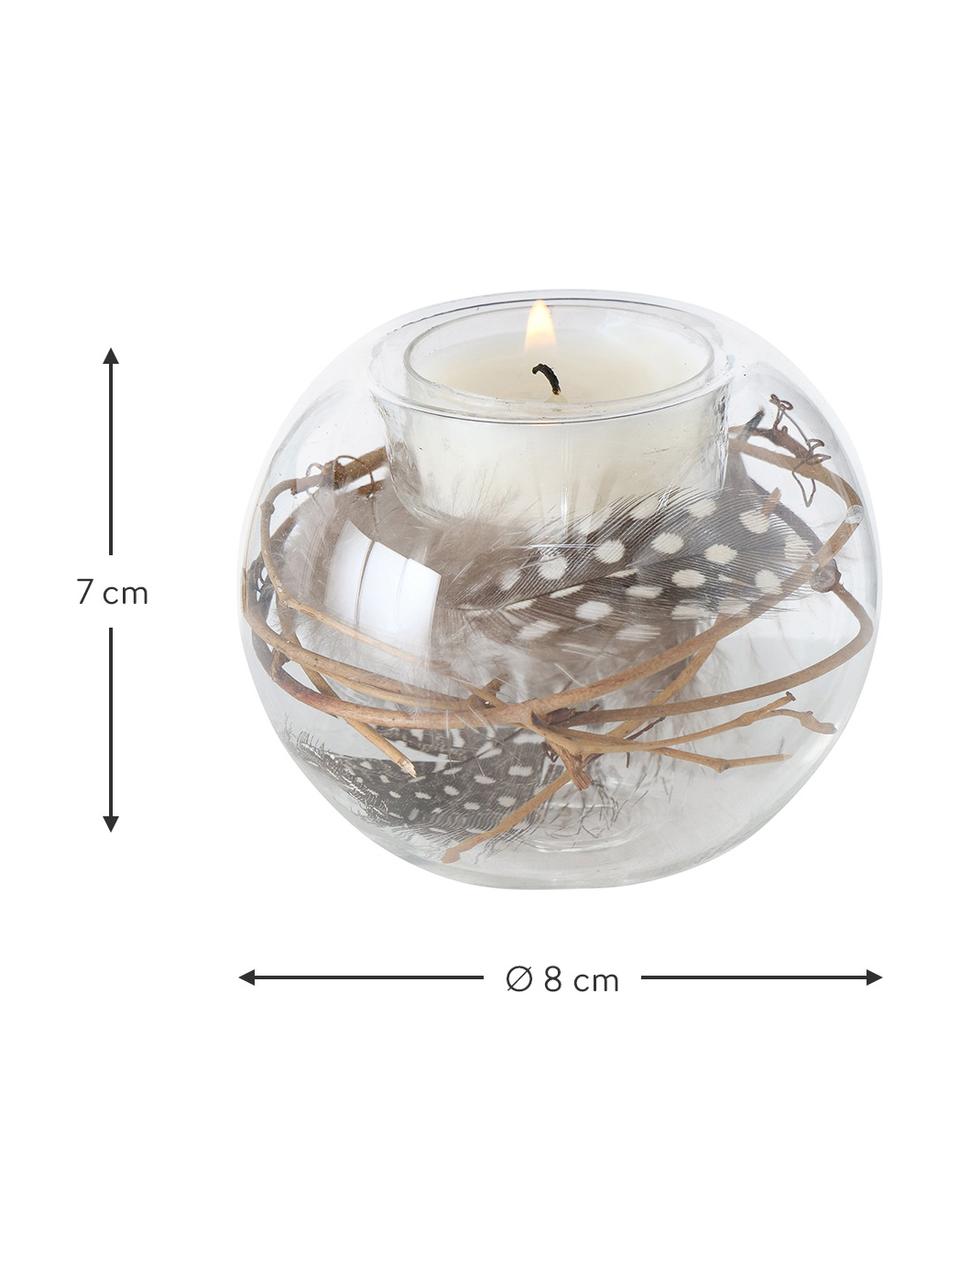 Glas-Teelichthalter Fedora mit Zweigen und Federn, Dekor: Echte Zweige und Hühnerfe, Transparent, Brauntöne, Ø 8 x H 7 cm